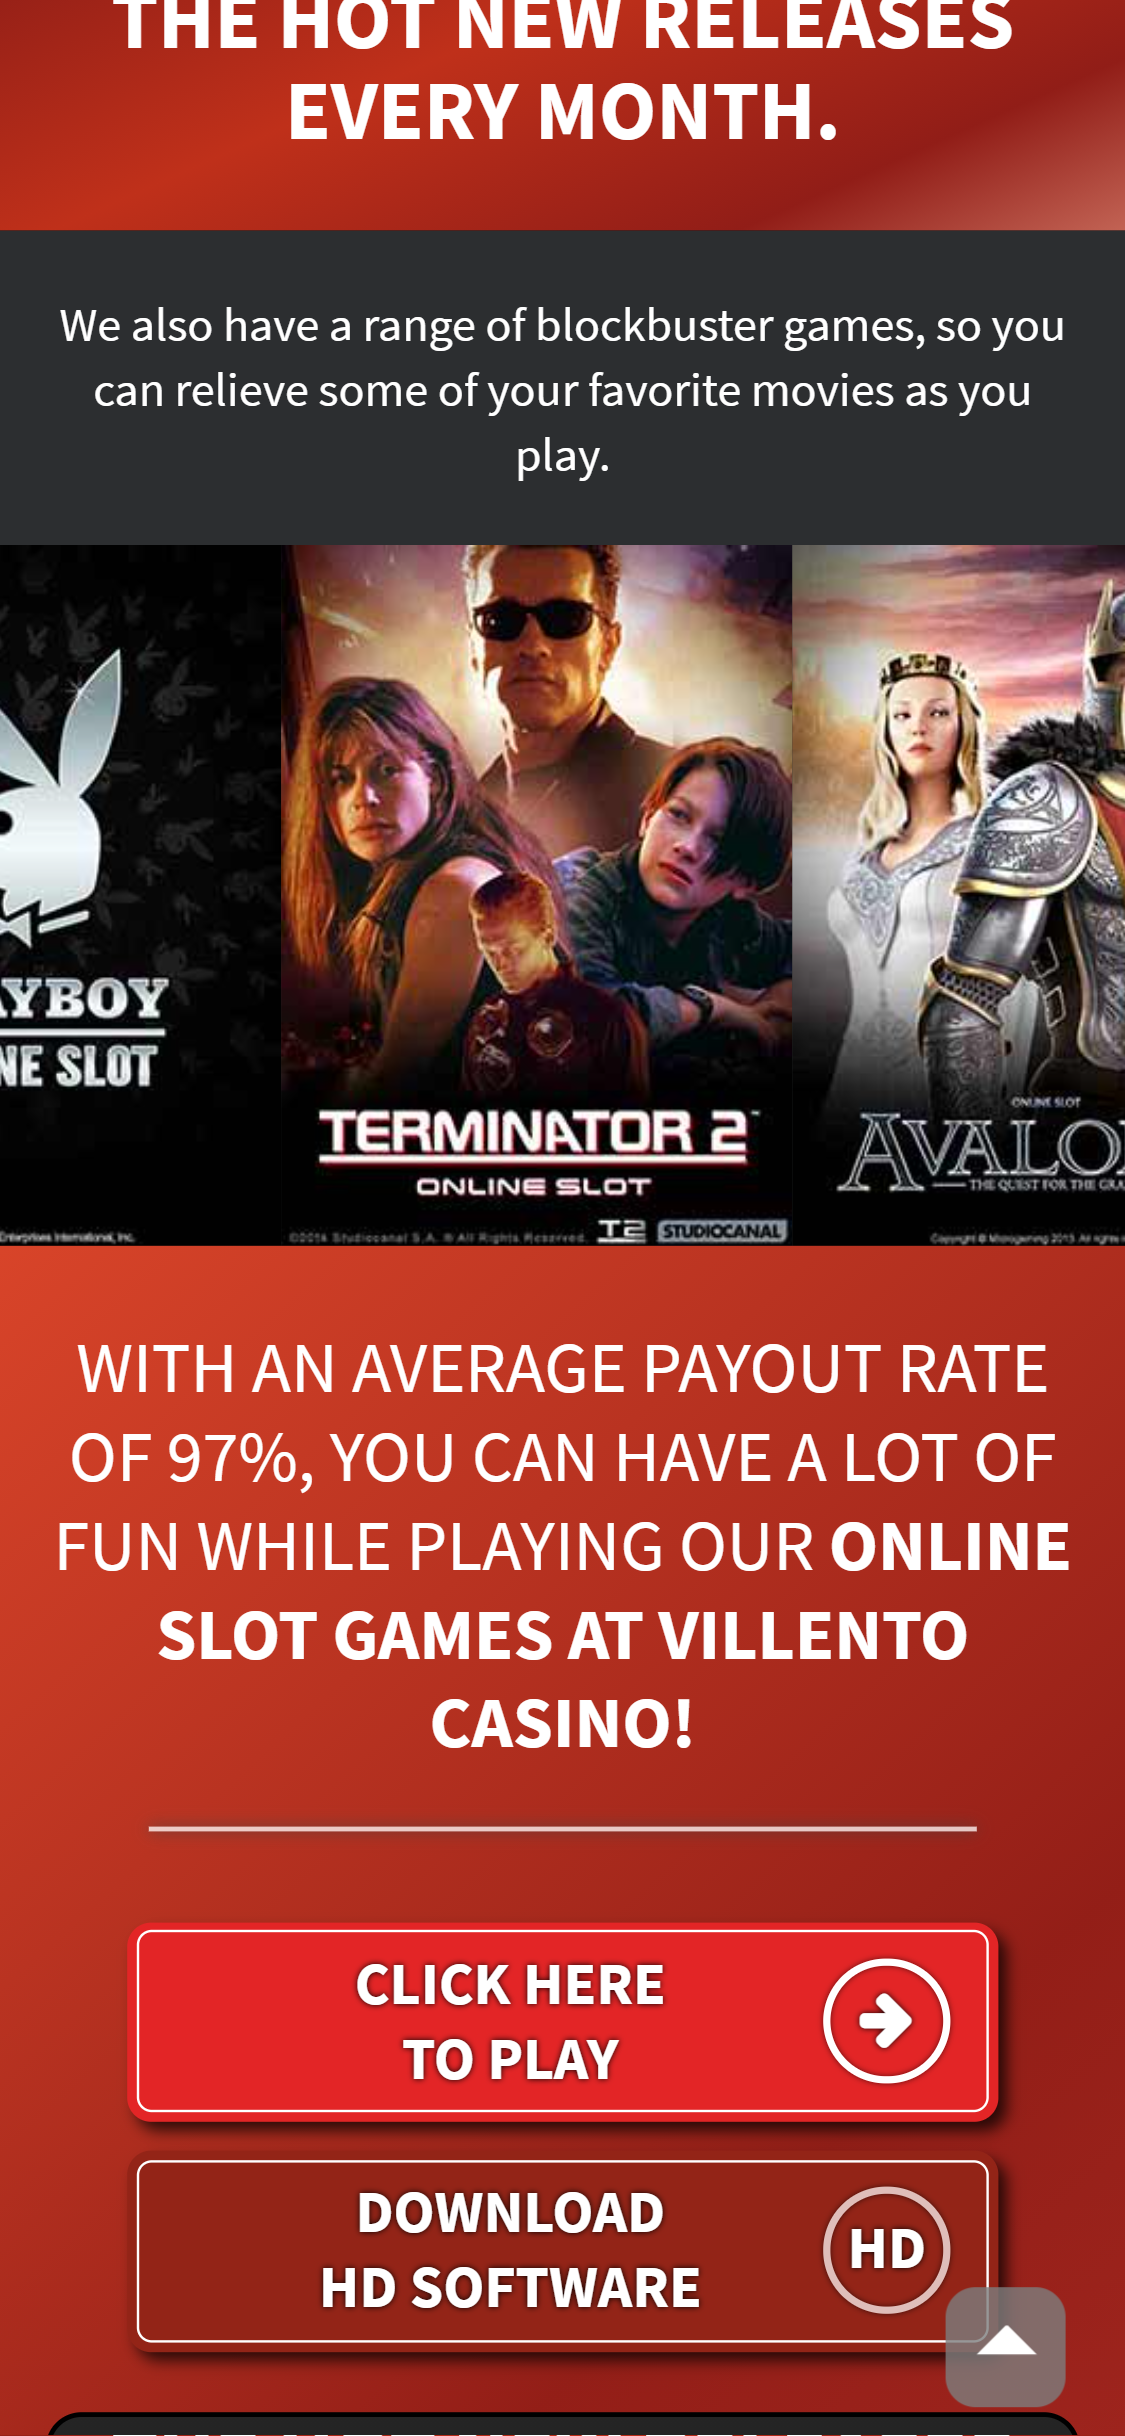 Как максимизировать свои бонусы в онлайн-казино Villento